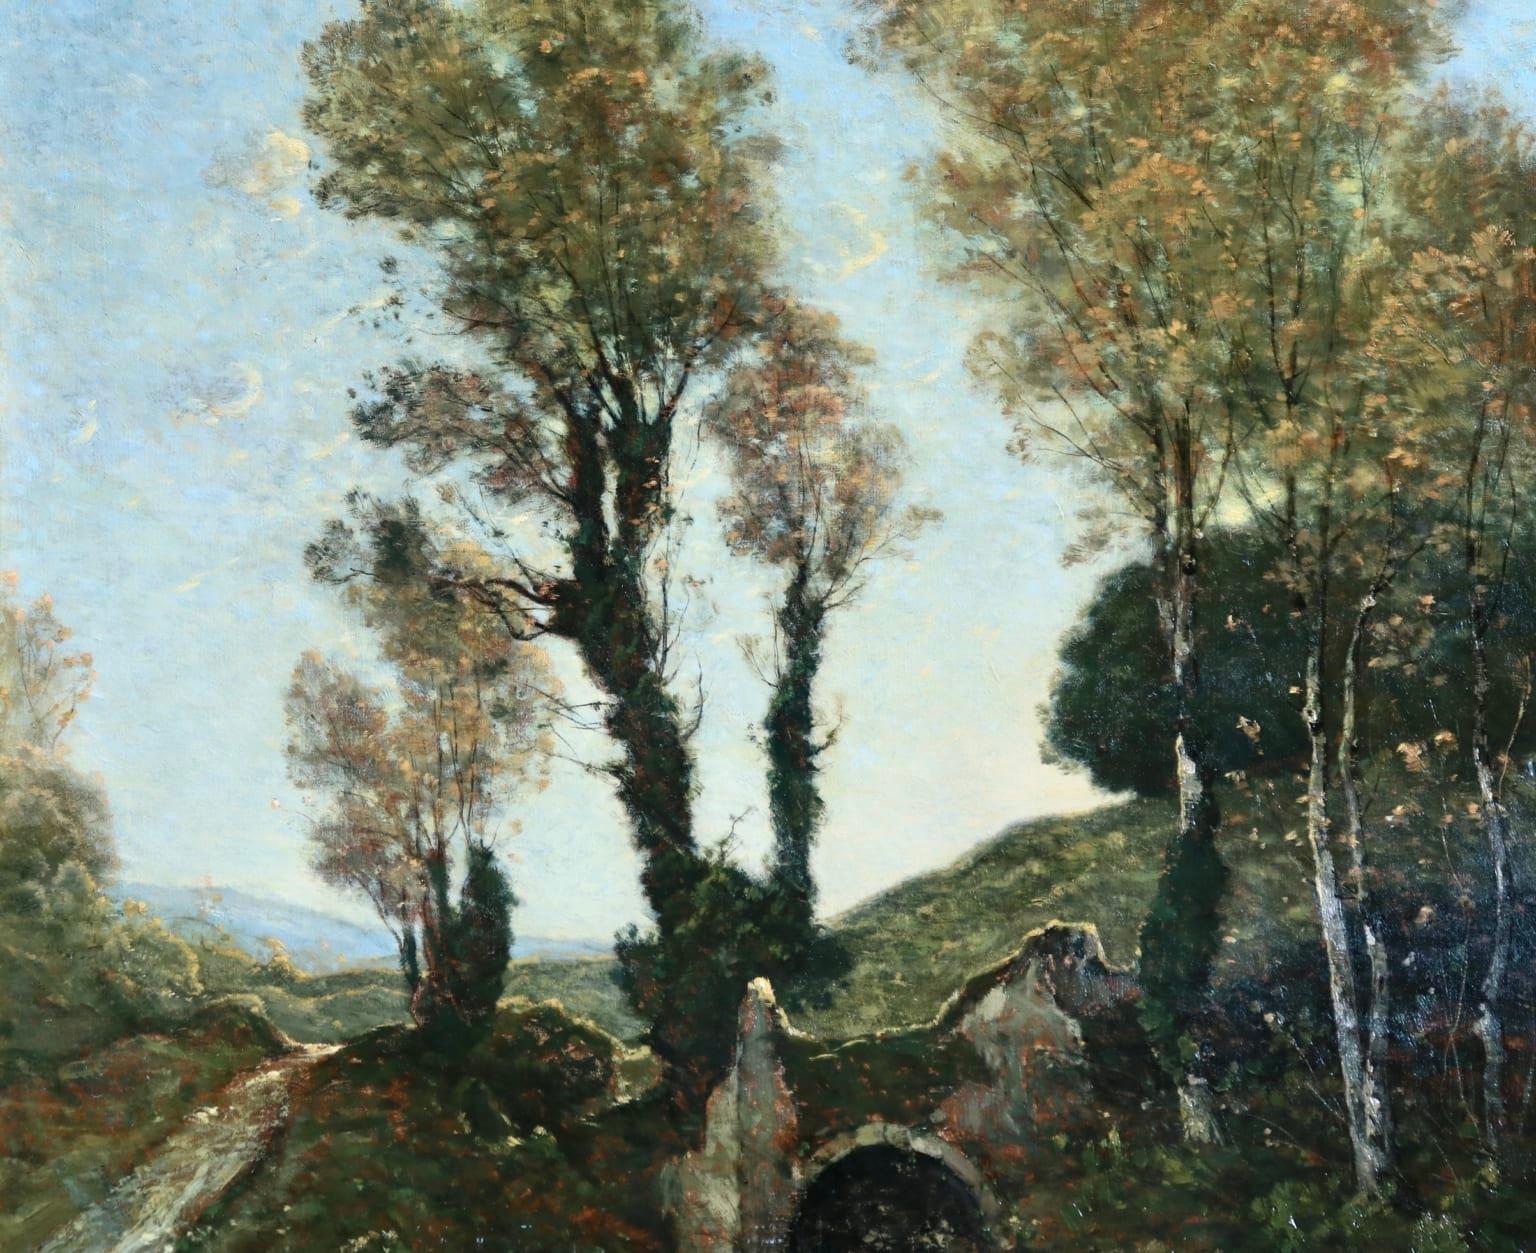 Sous bois au soleil couchant - Barbizon Oil, Stream in Landscape by Harpignies - Barbizon School Painting by Henri Joseph Harpignies